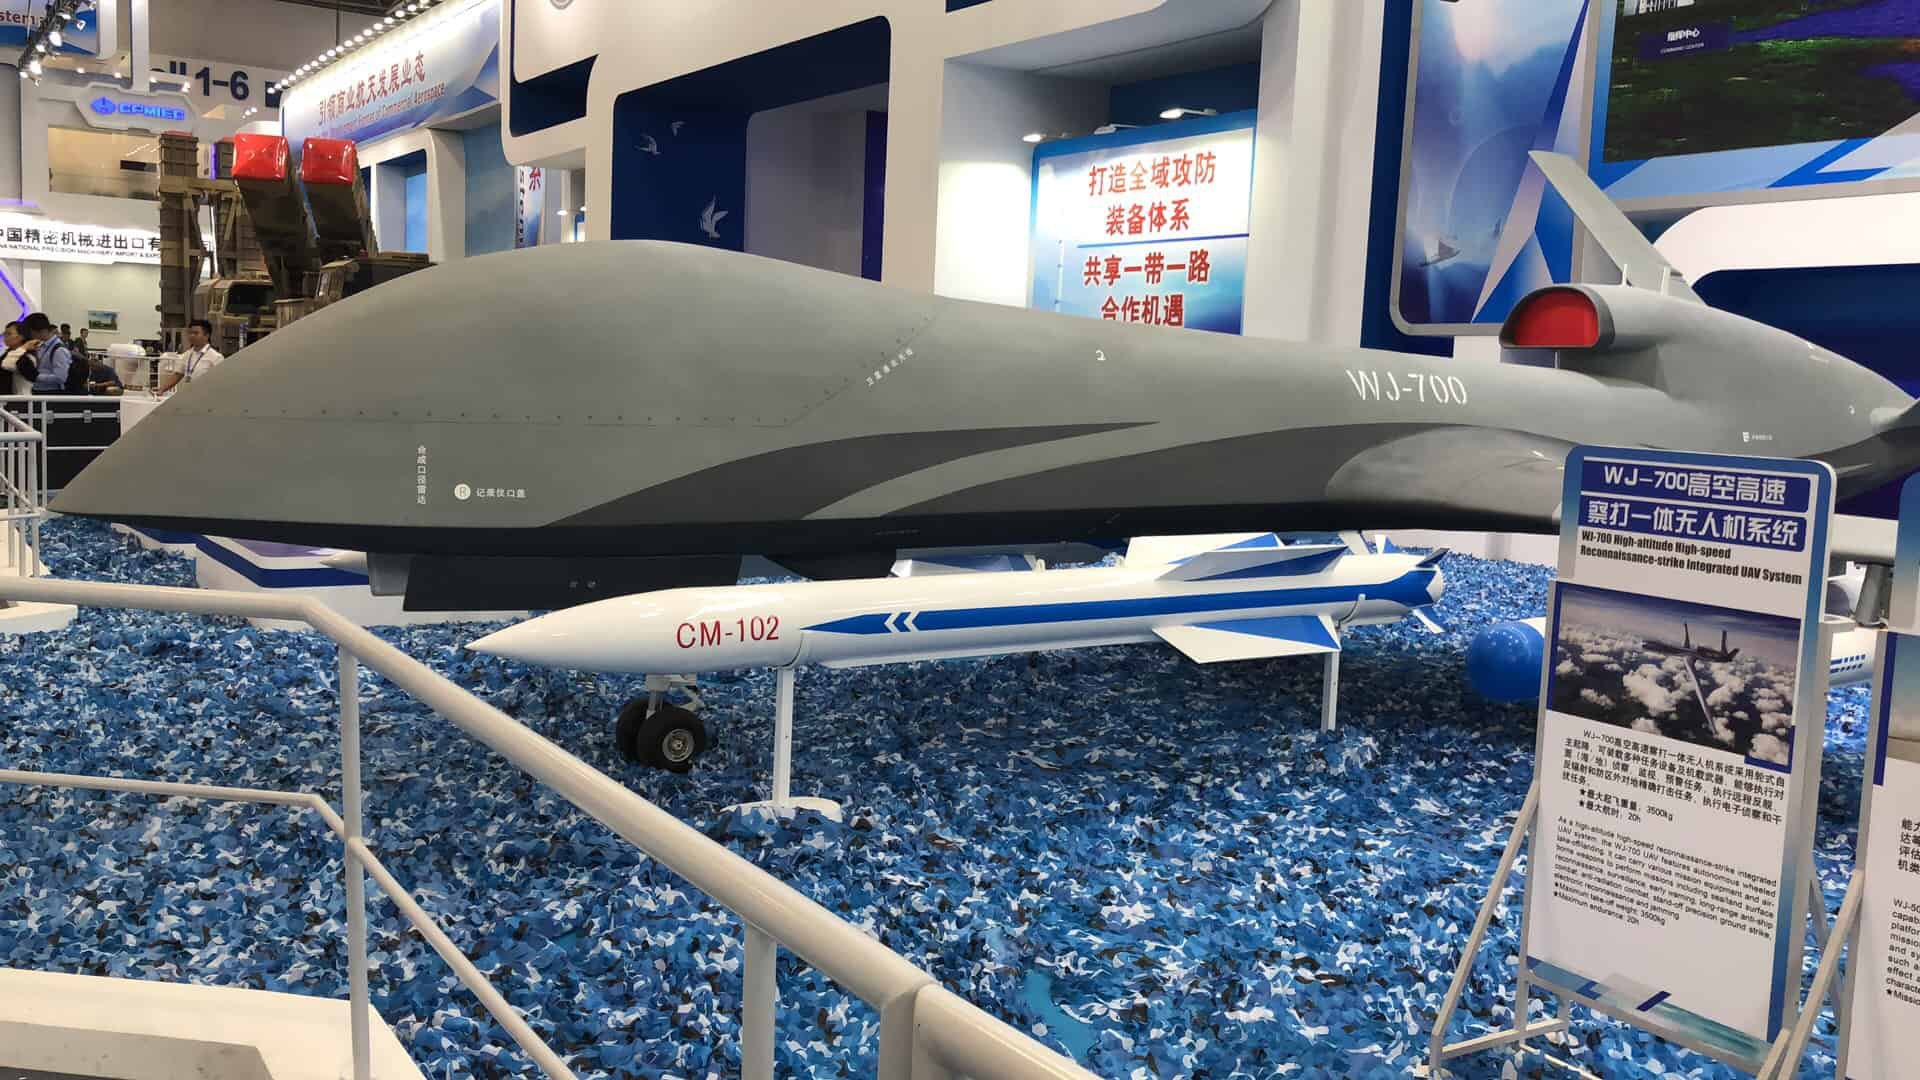 WJ-700 вперше був представлений на аерокосмічному салоні в Чжухаї у 2018 році.